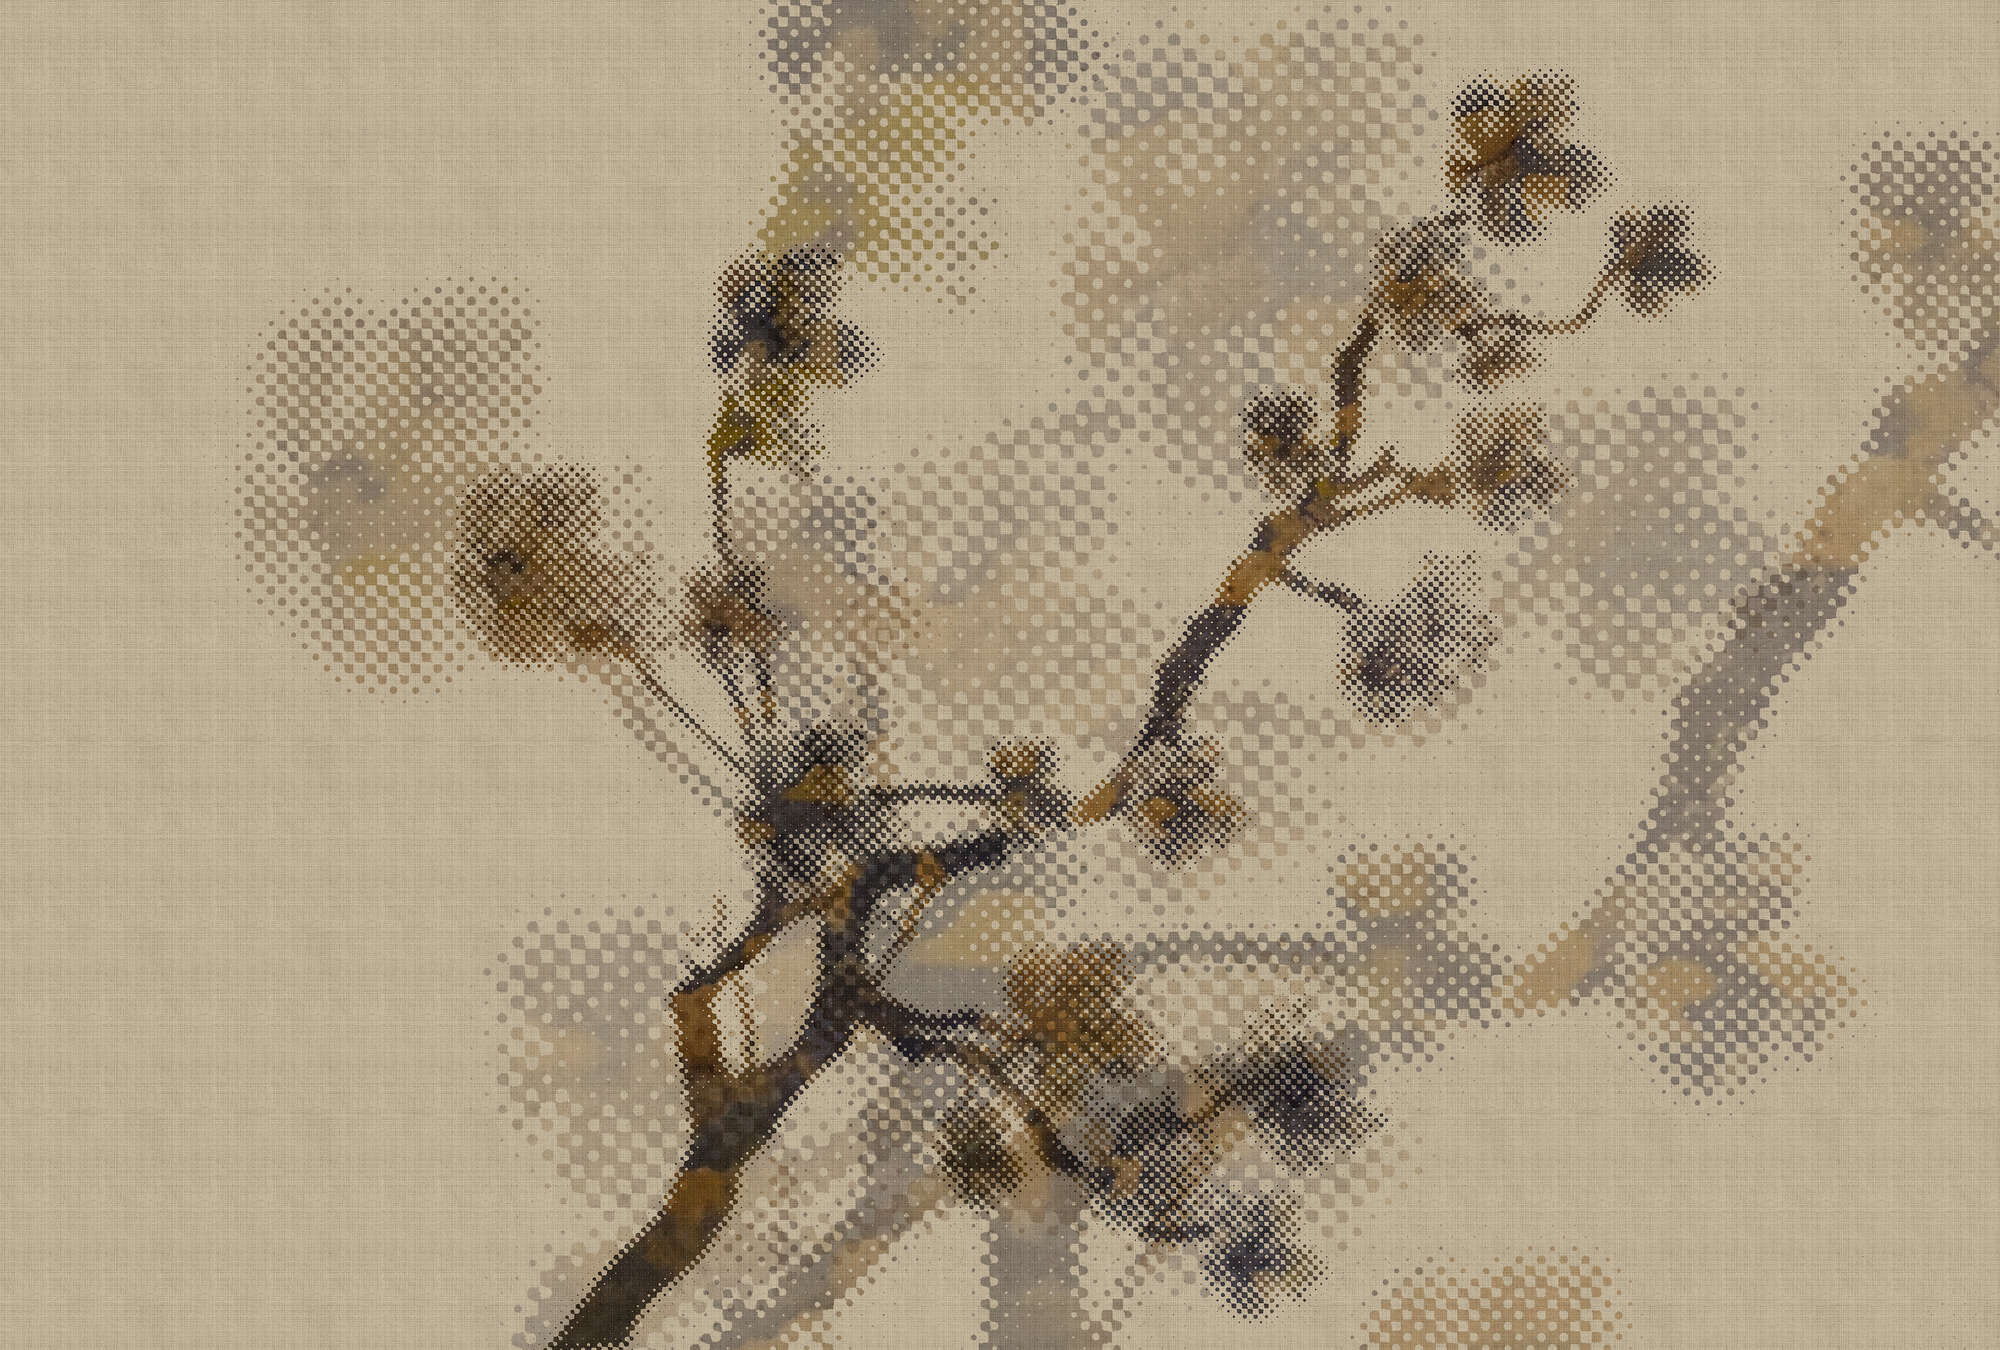             Twigs 2 - Papel pintado en estructura de lino natural con motivo de ramas y diseño de píxeles - Beige | Vellón liso Premium
        